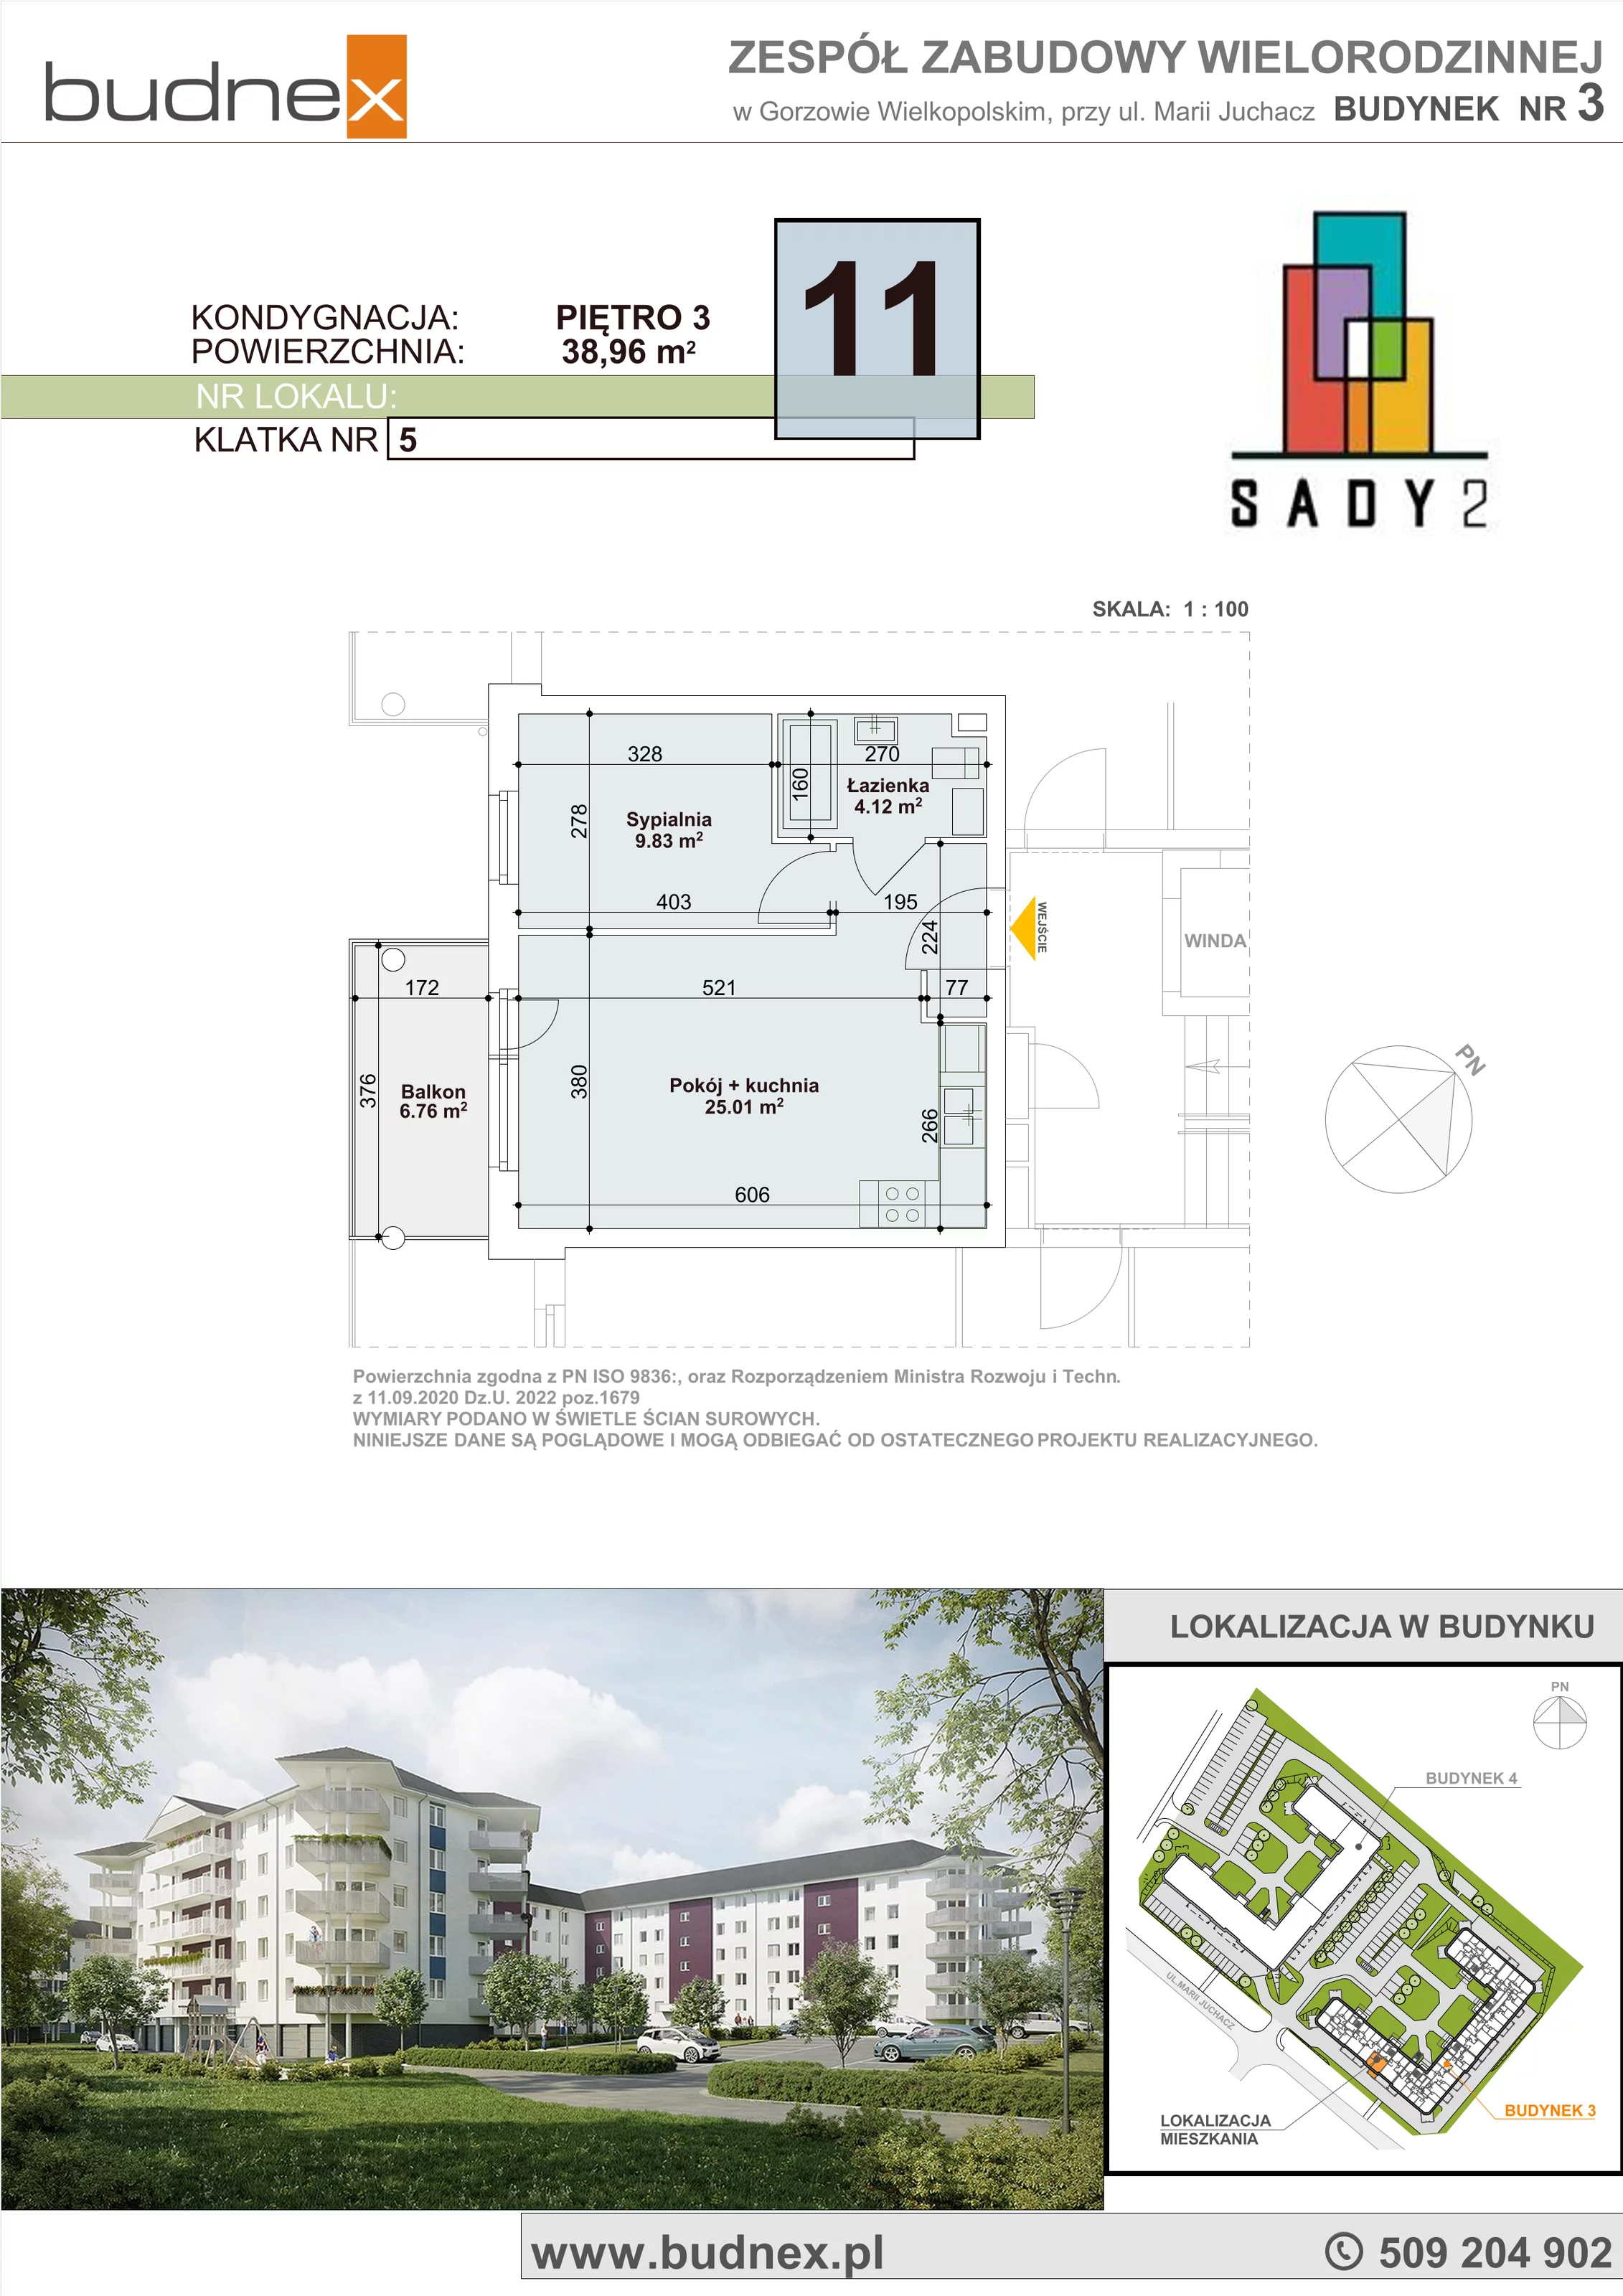 Mieszkanie 38,96 m², piętro 3, oferta nr 5/M11, Sady II Bud. 3, Gorzów Wielkopolski, ul. Marii Juchacz